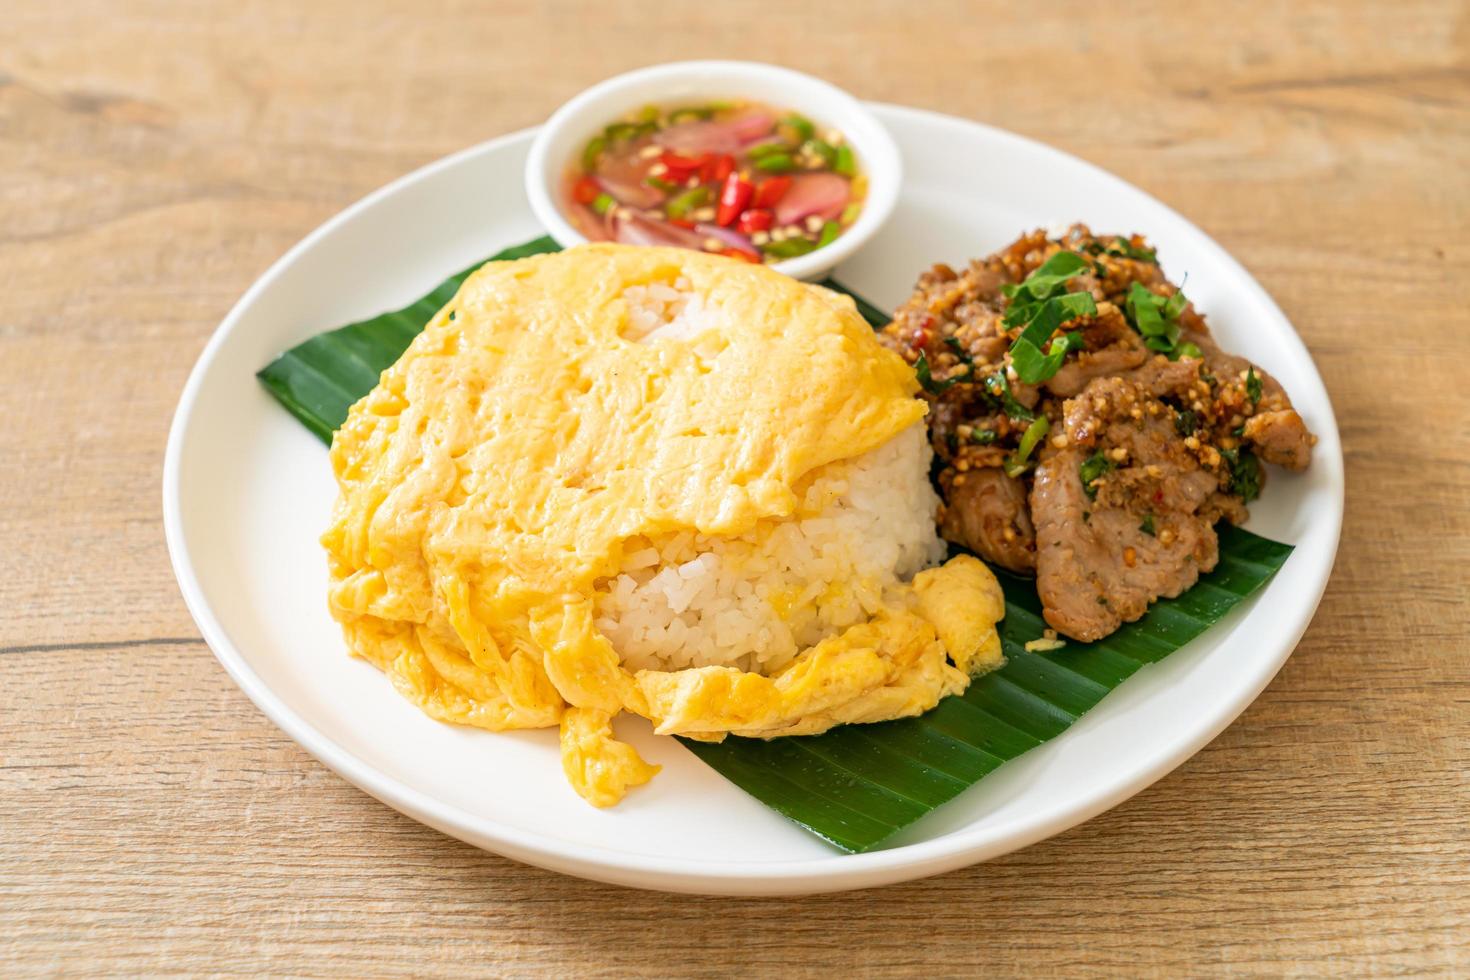 ovo com arroz coberto com carne de porco grelhada e molho picante - comida asiática foto